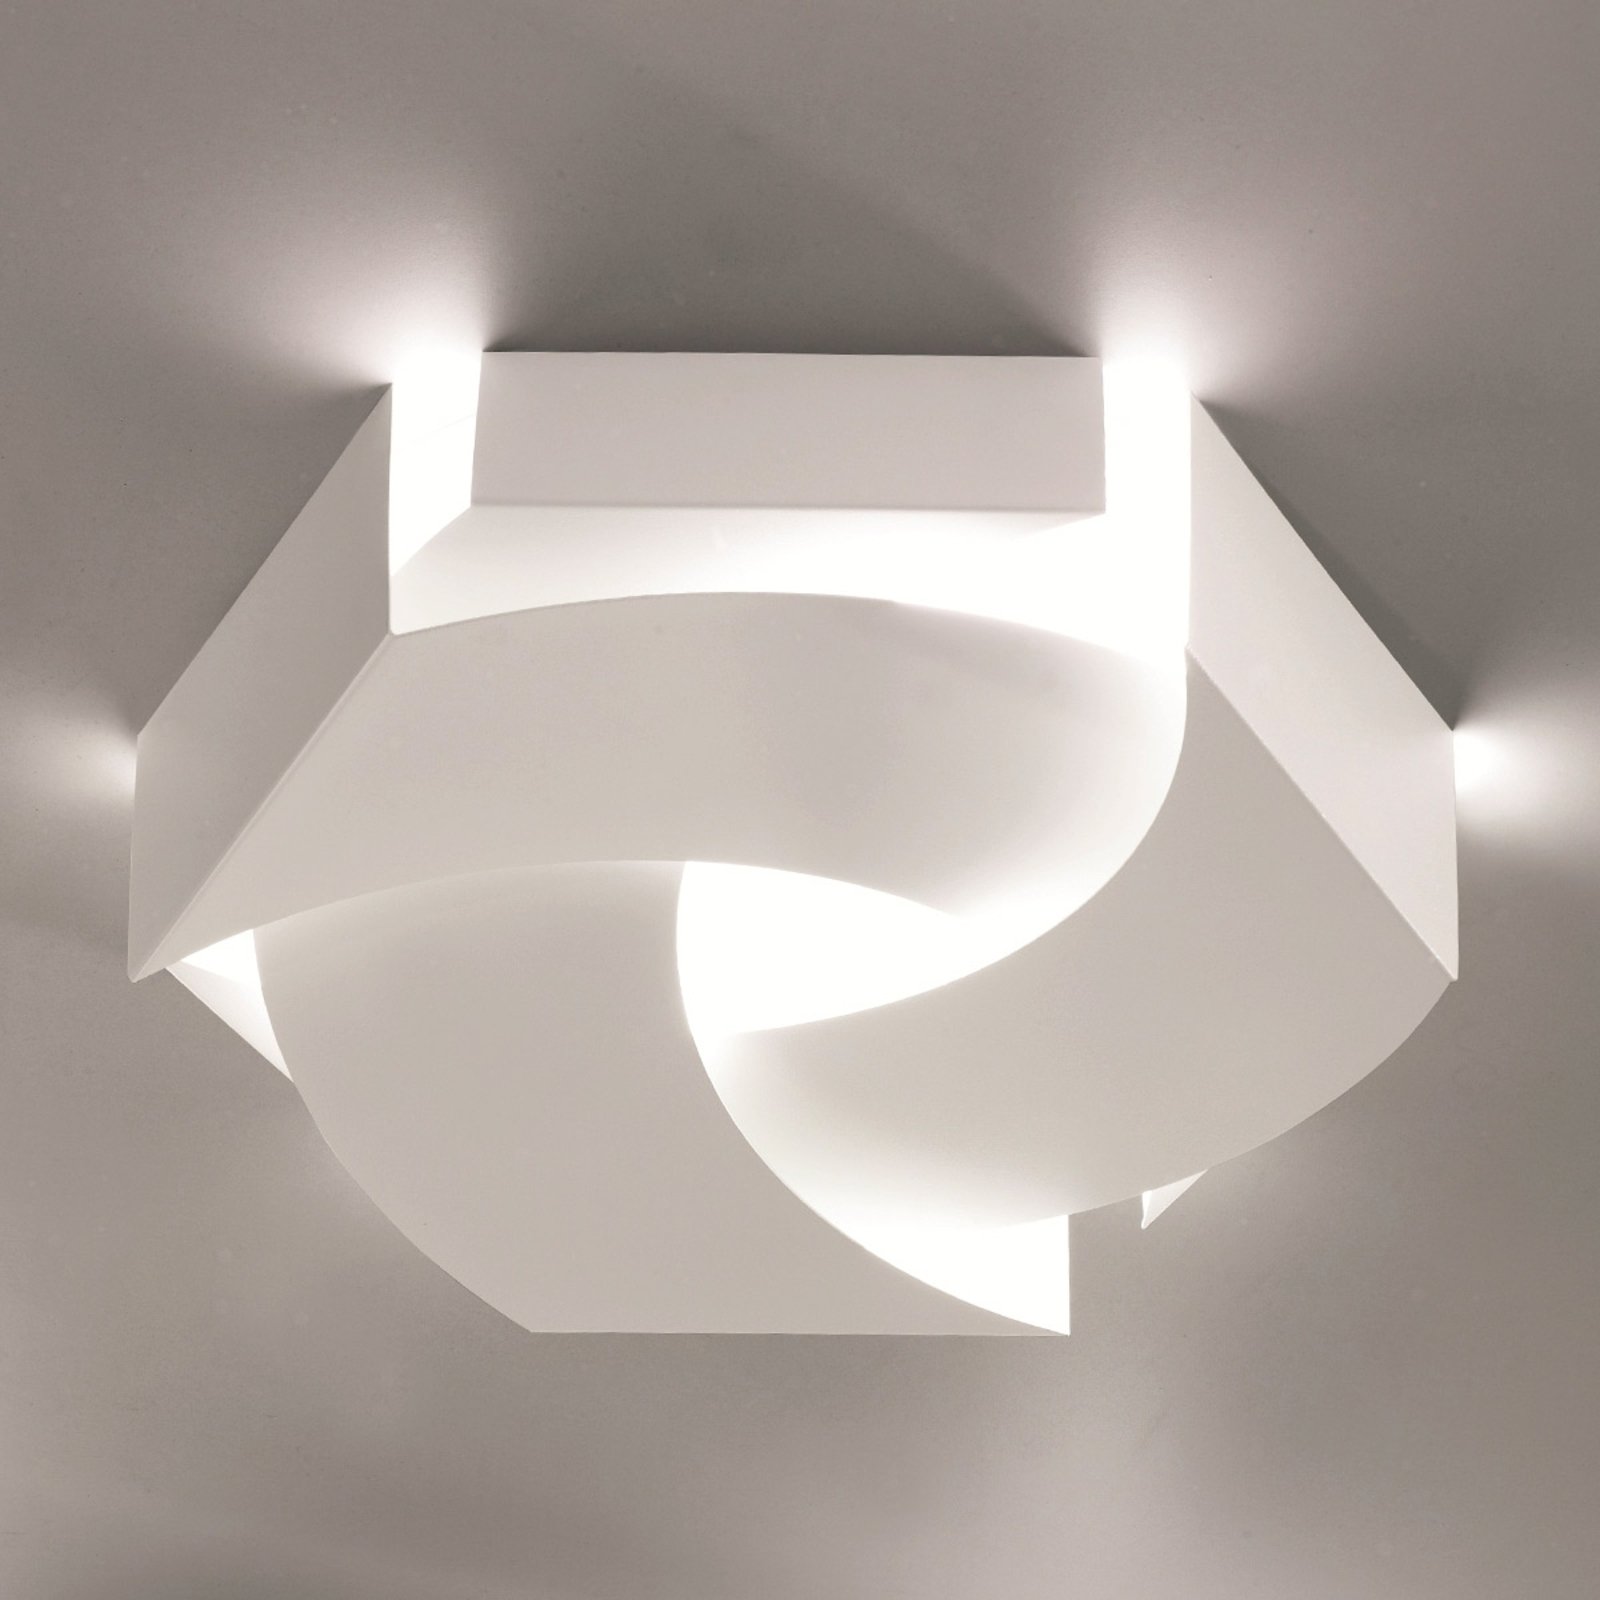 Designové světlo Cosmo LED pro strop a stěnu